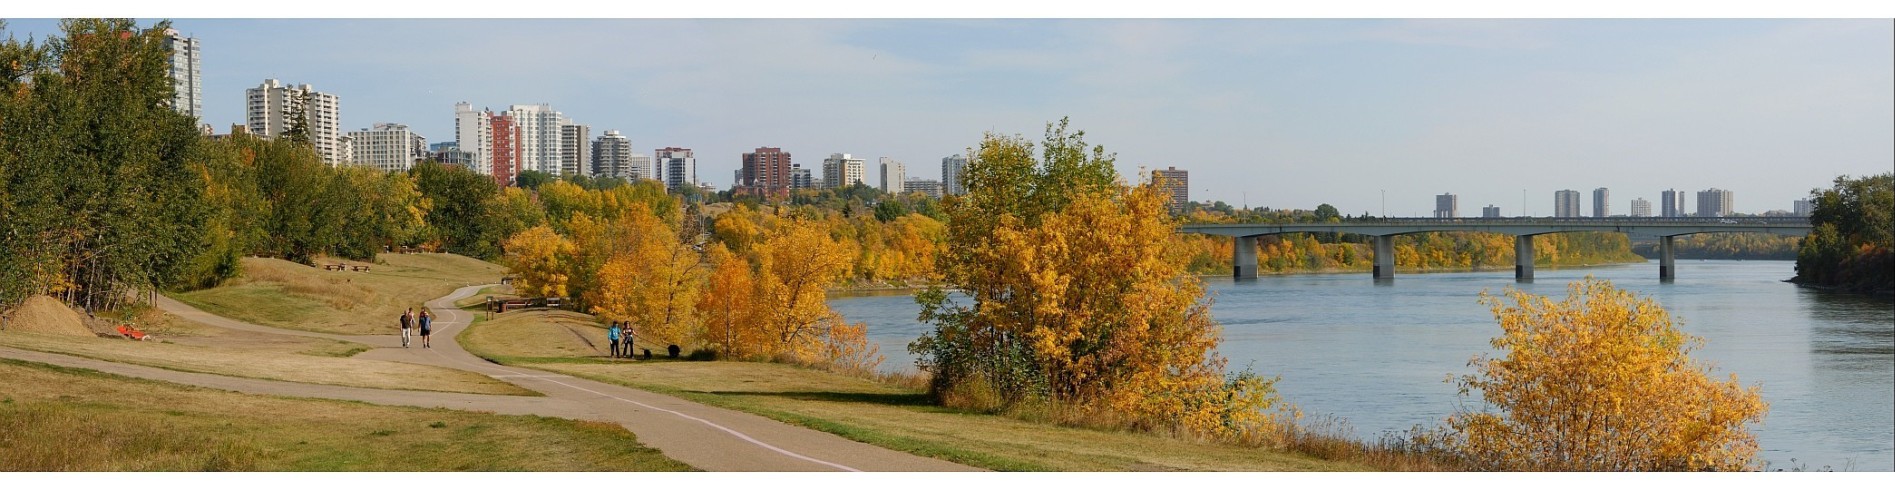 Edmonton North Saskatchewan River Valley